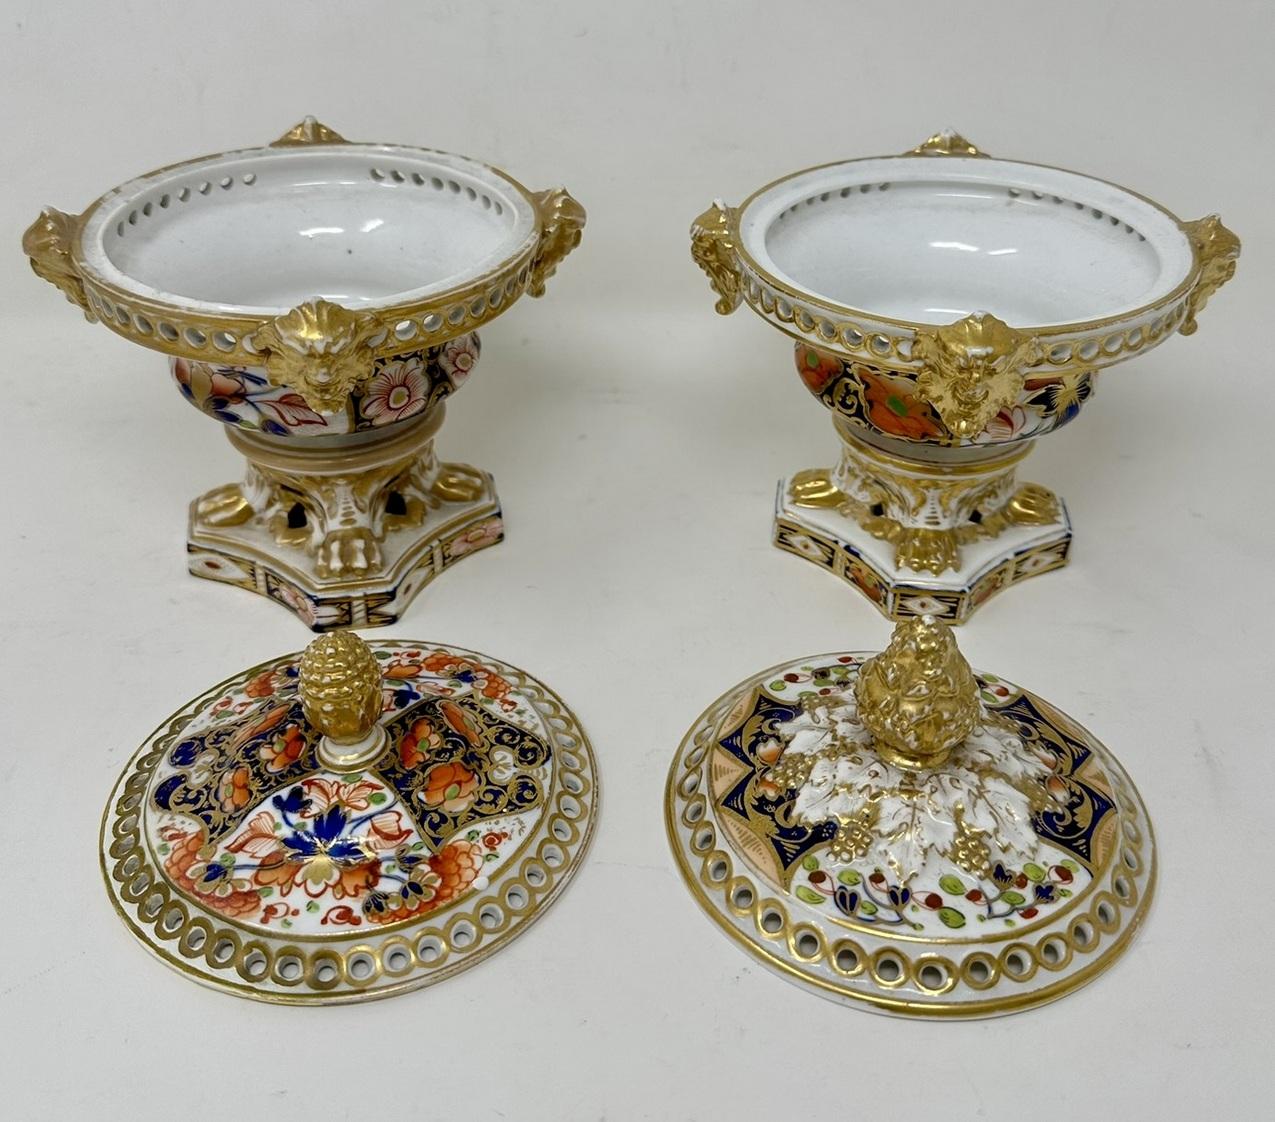 Antique Regency English Crown Derby Pair Urns Vases Pot Pourri Centerpieces 1815 For Sale 1